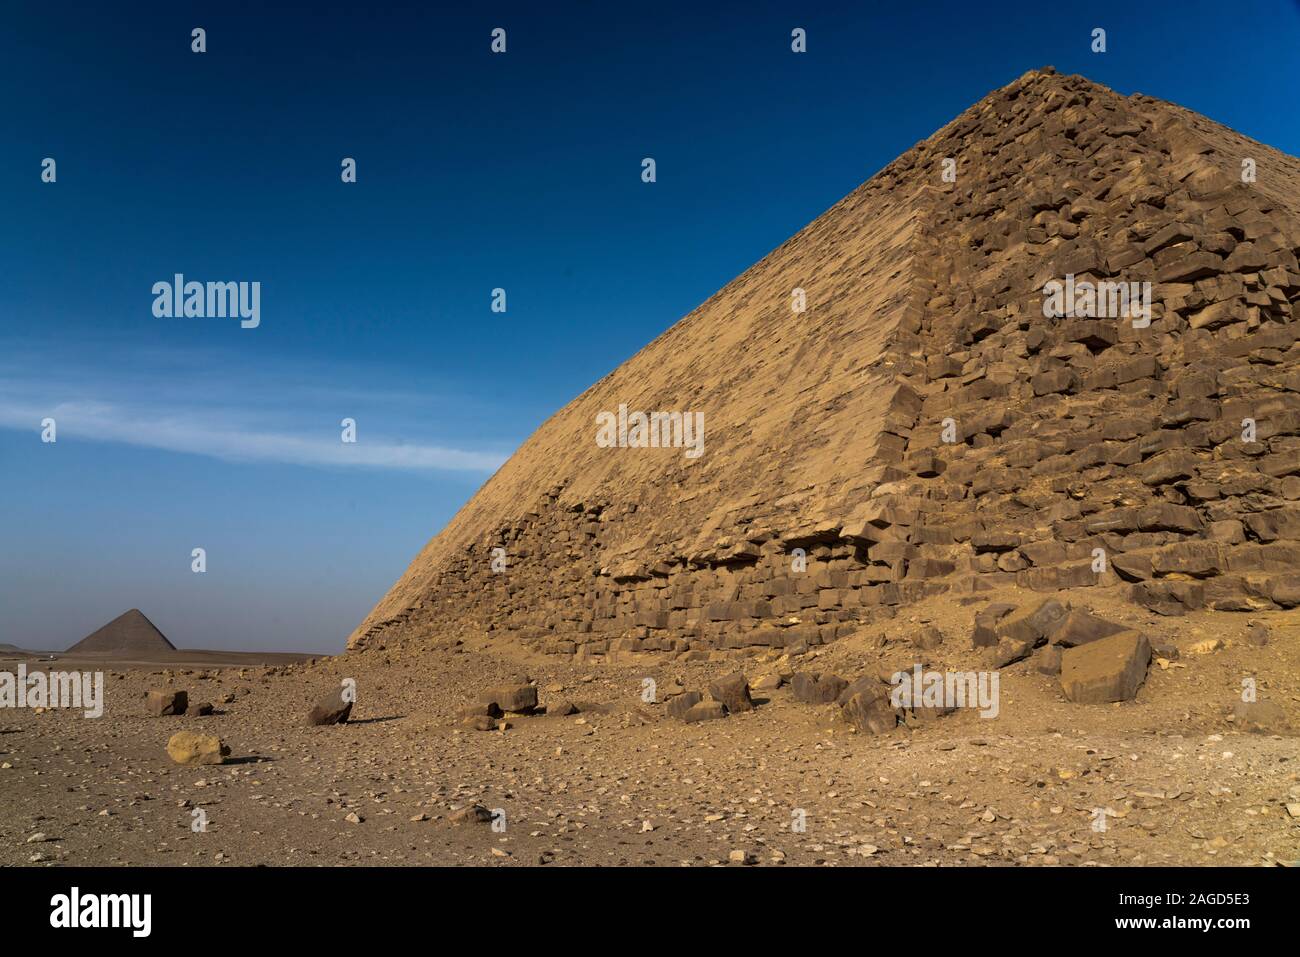 12 novembre, 2019, LE CAIRE, ÉGYPTE - pyramide rhomboïdale est une pyramide de l'Égypte ancienne, la première, située à la nécropole royale de Dahchour en dehors du Caire Egypte Banque D'Images